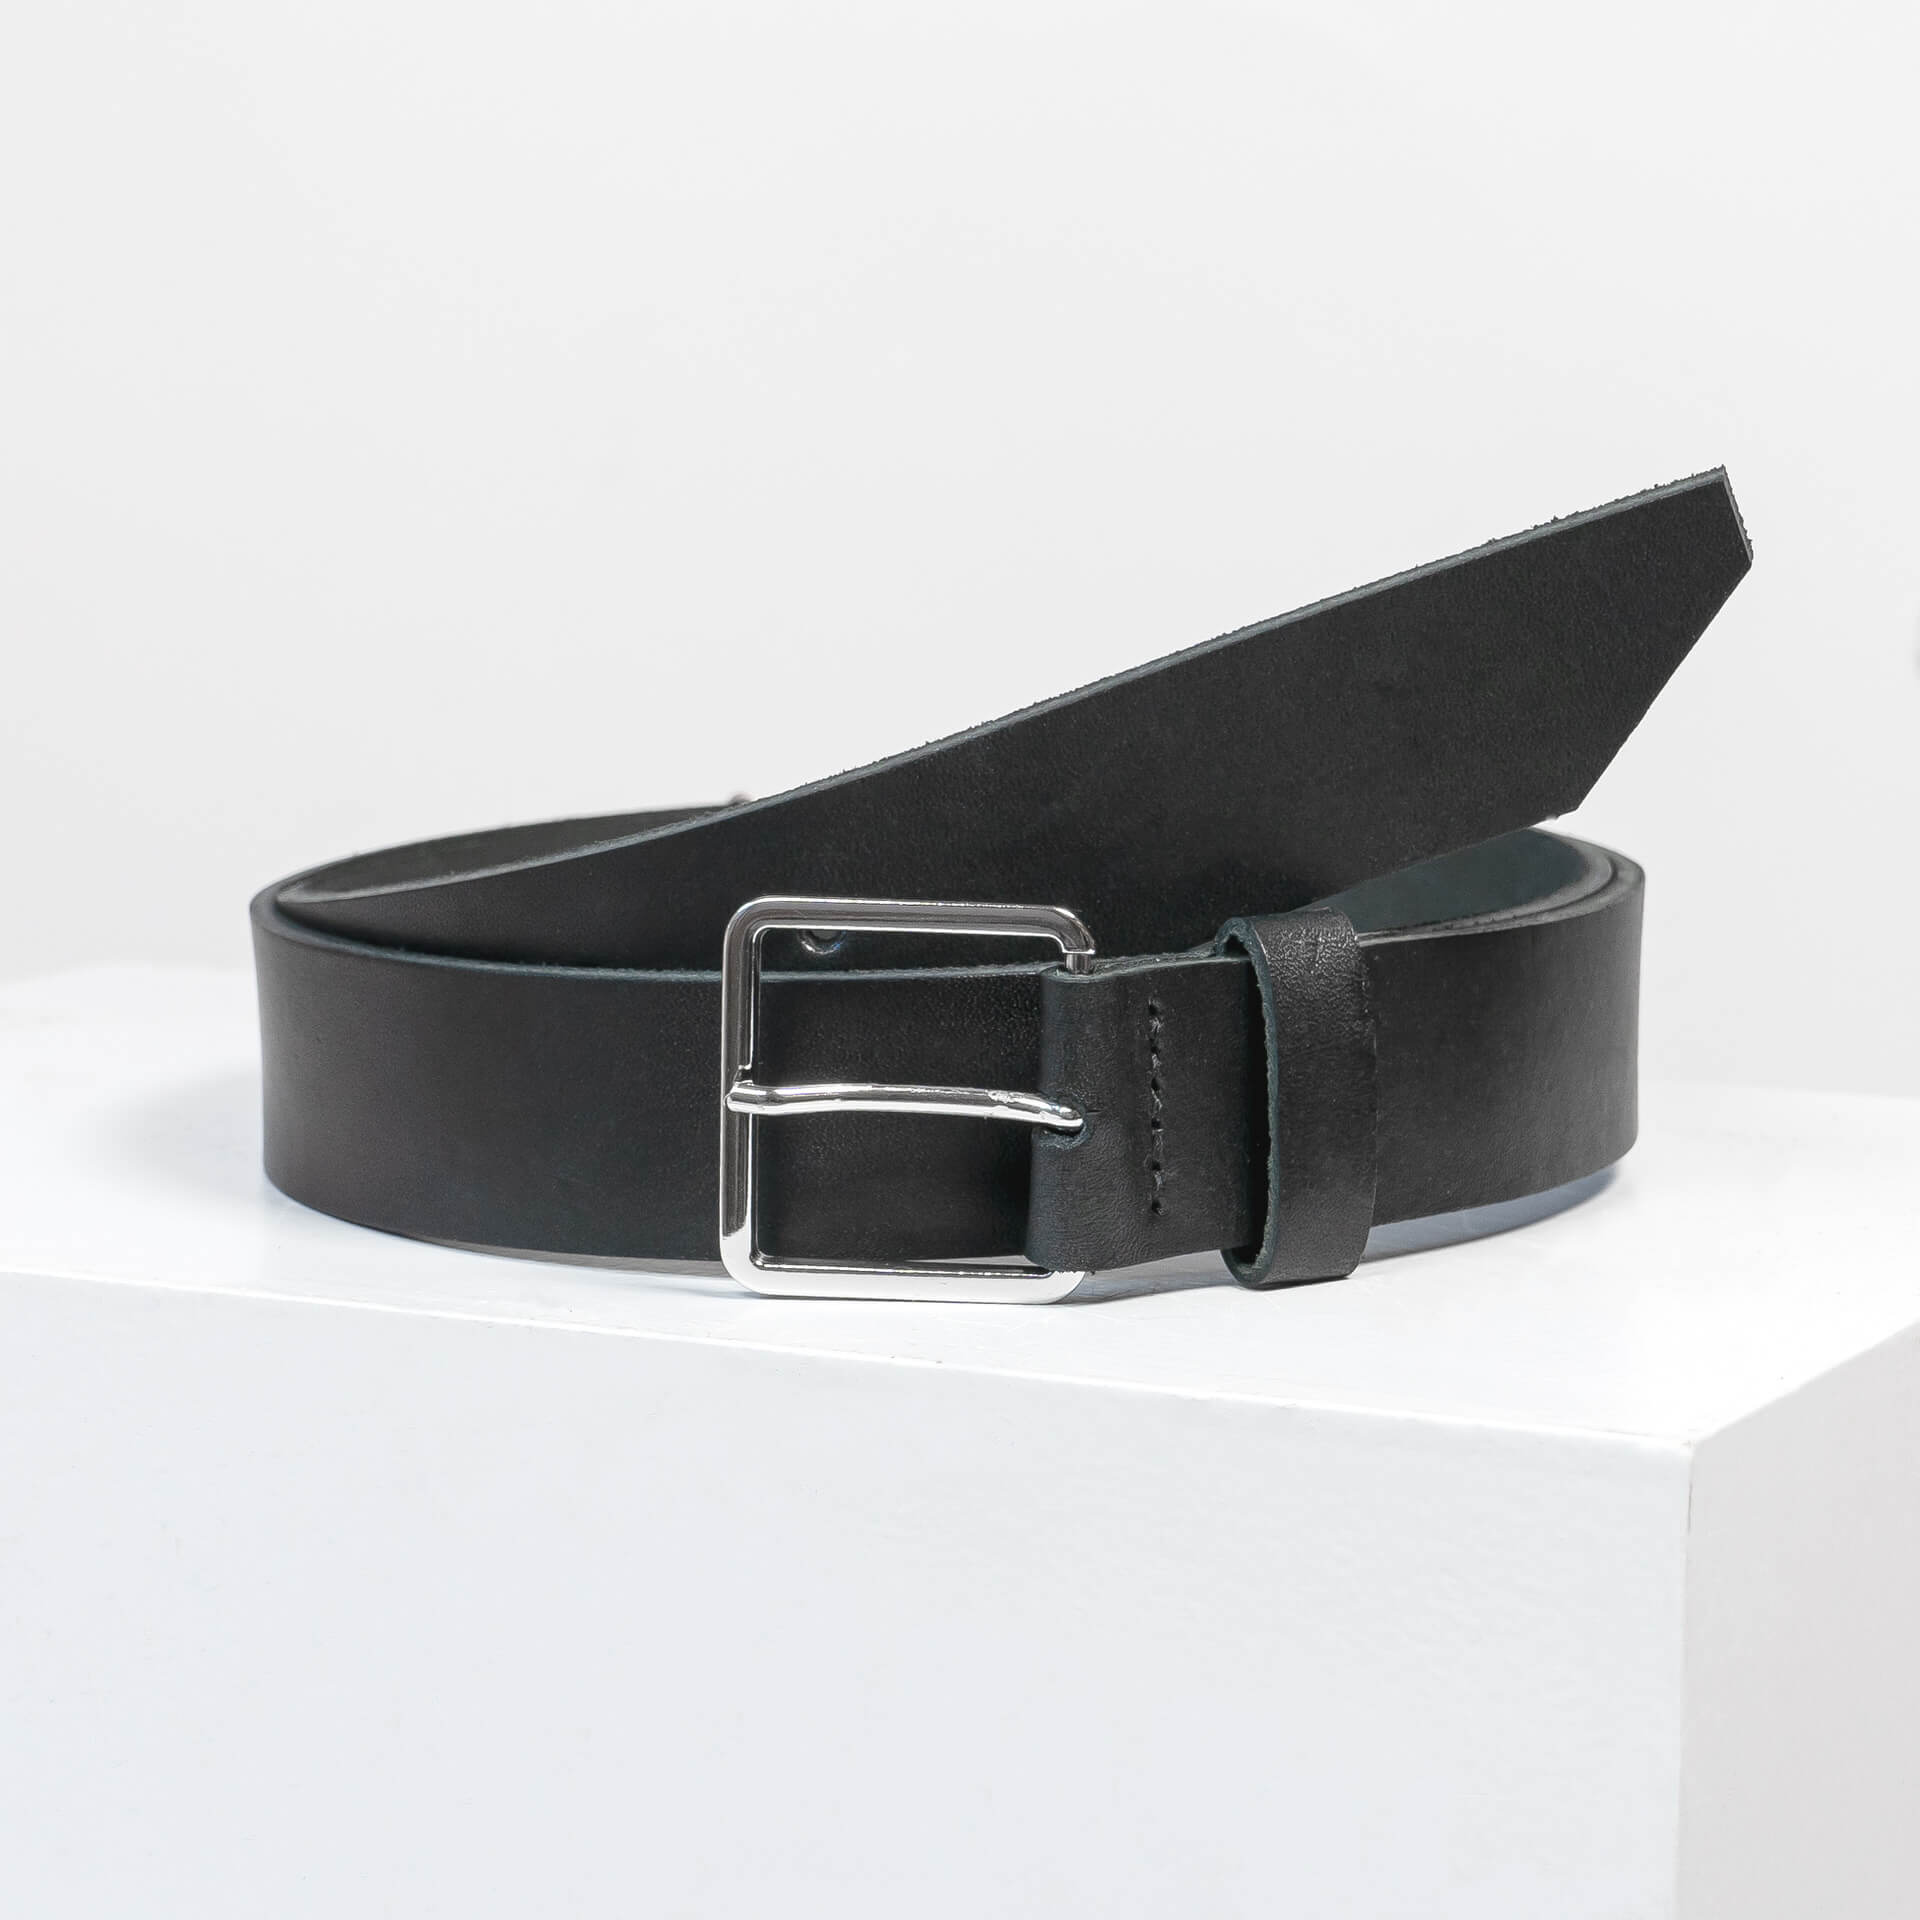 Guertel-breit-3cm-FranziskaKlee-Naturleder-schwarz-front